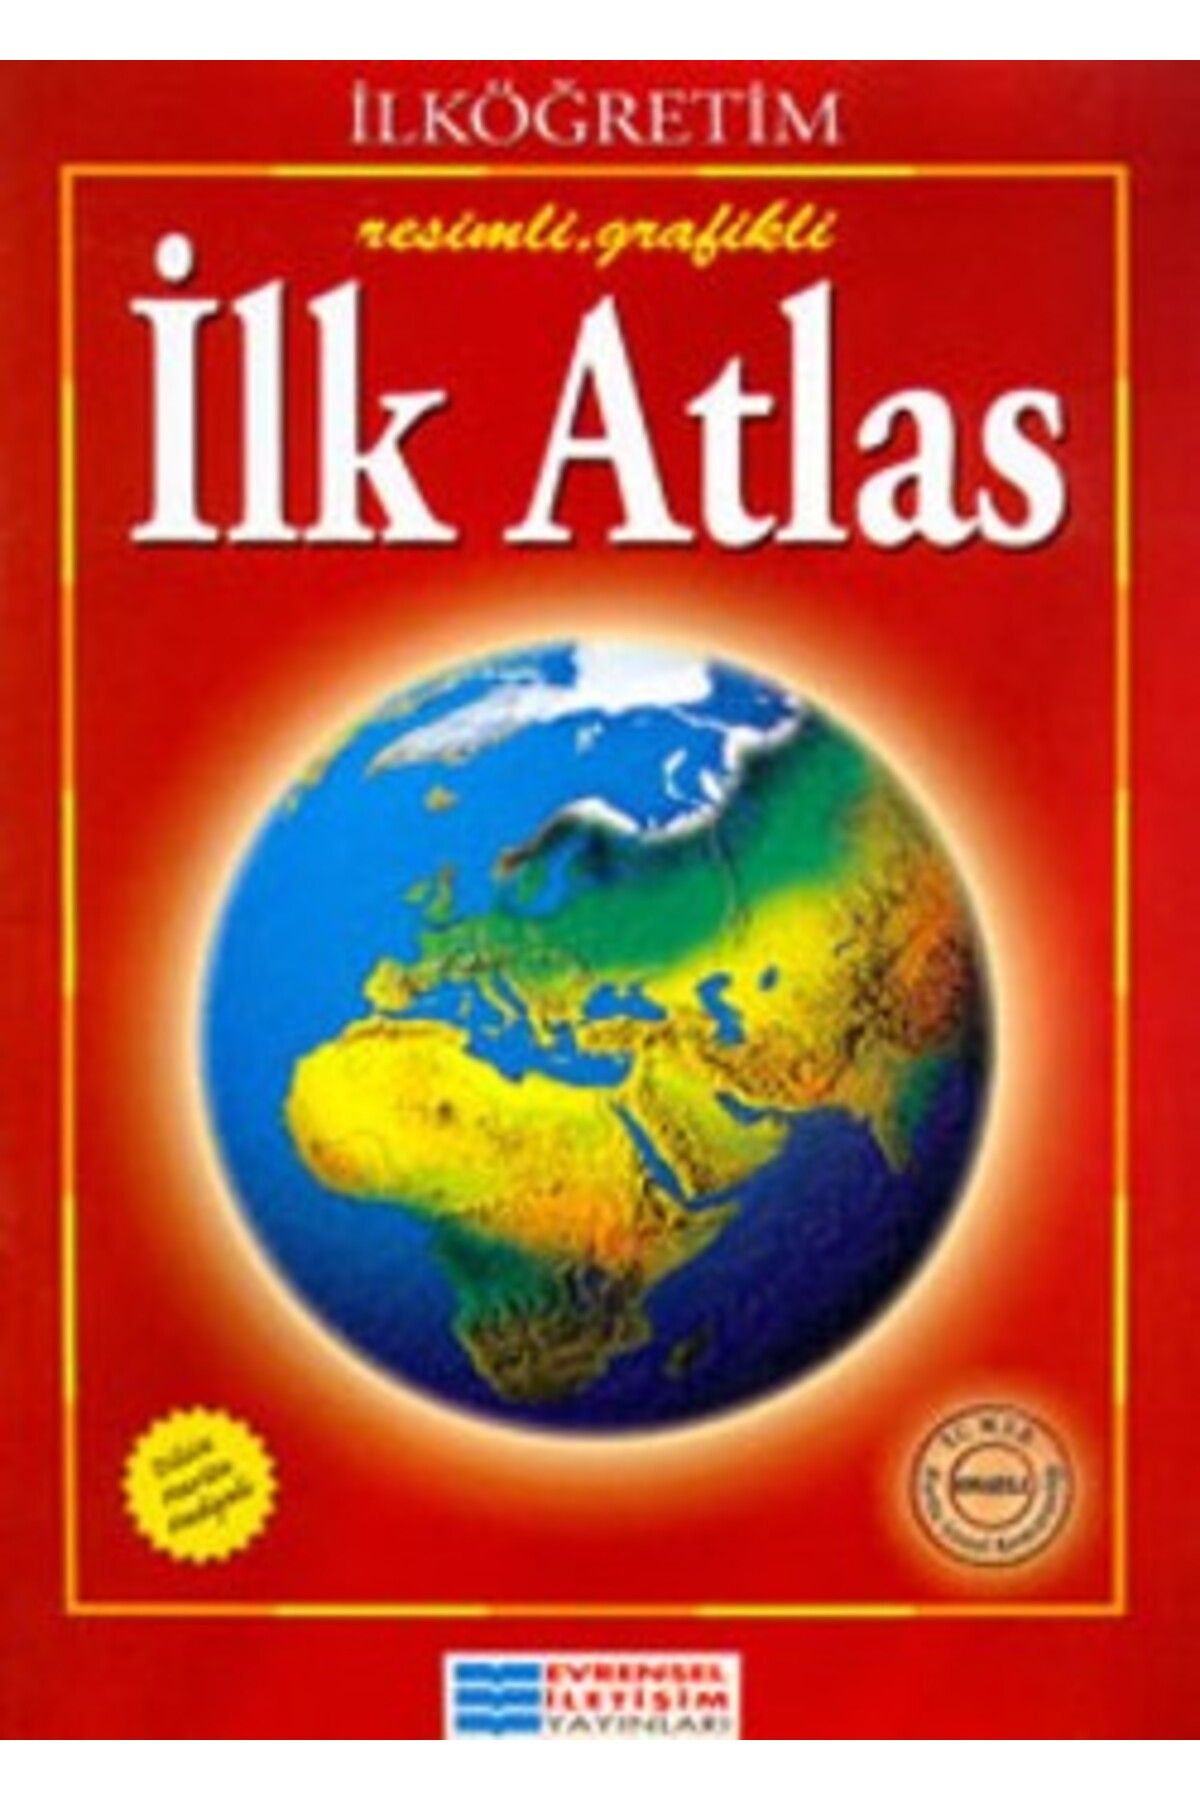 Evrensel İletişim Yayınları İlk Atlas kitabı - Evrensel Kolektif - Evrensel İletişim Yayınları